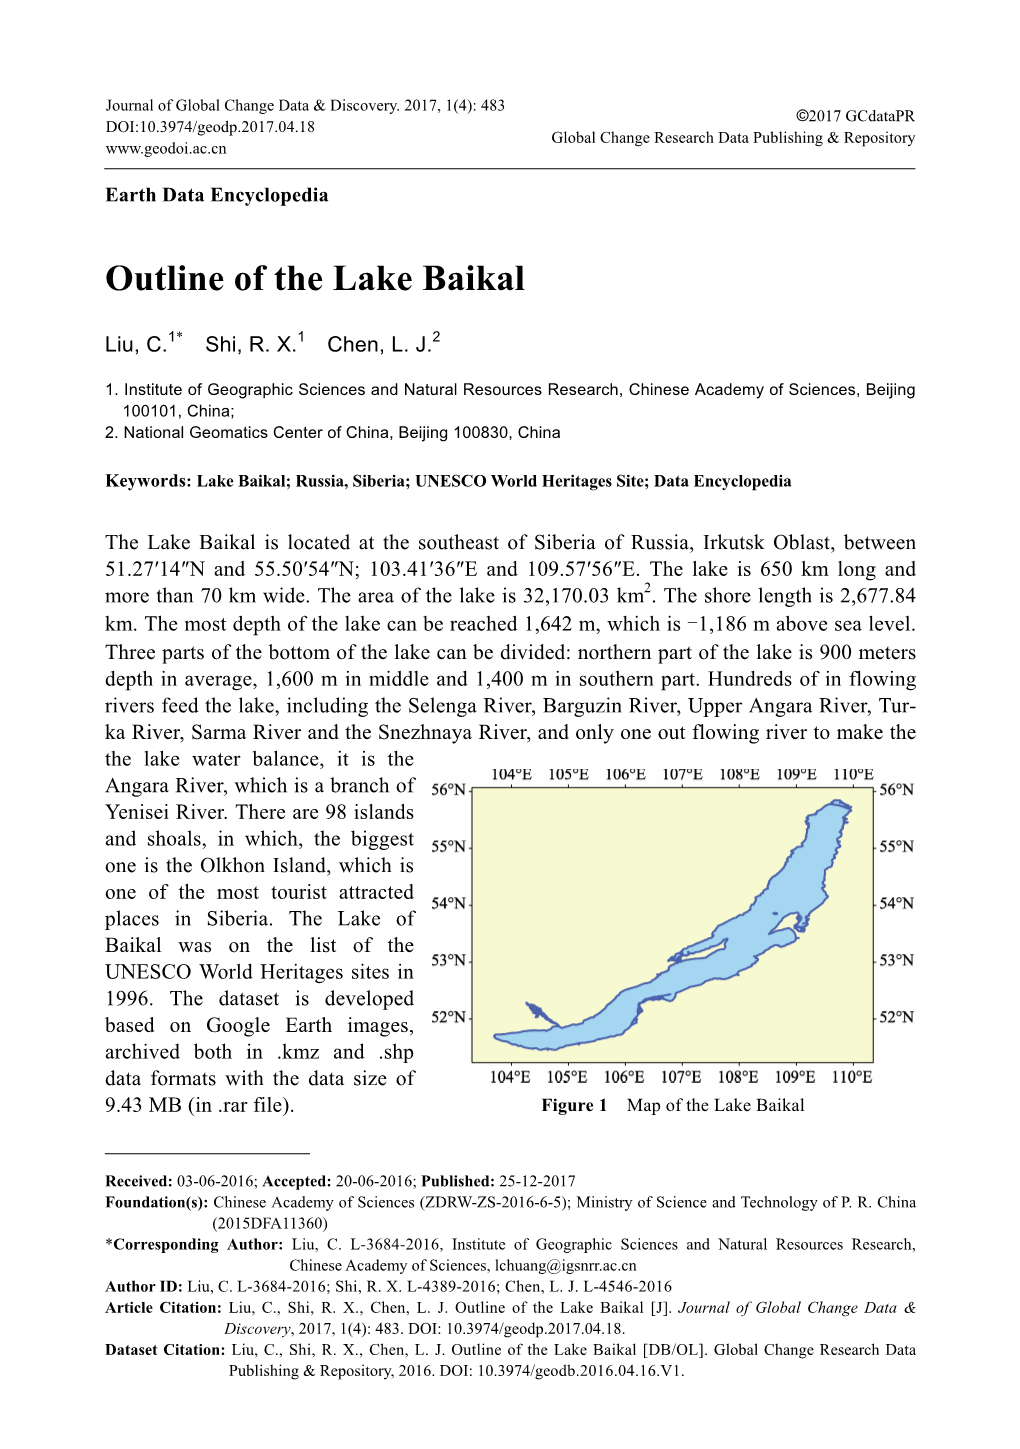 Outline of the Lake Baikal